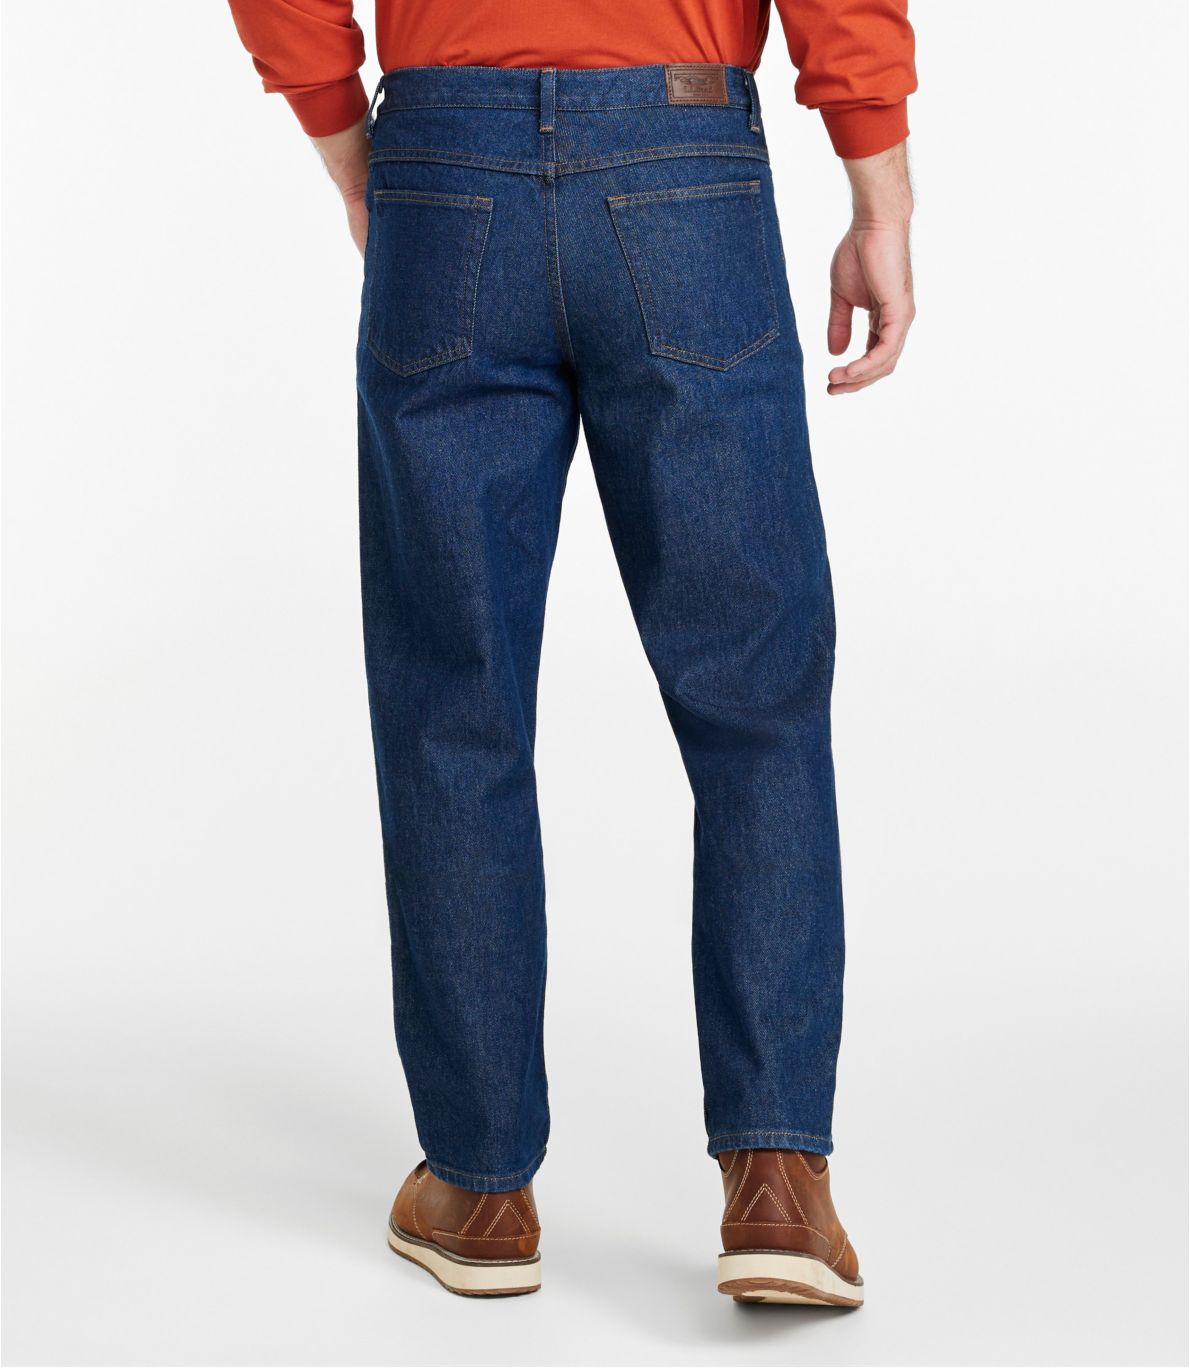 Men's Double L® Jeans, Natural Fit, Hidden Comfort